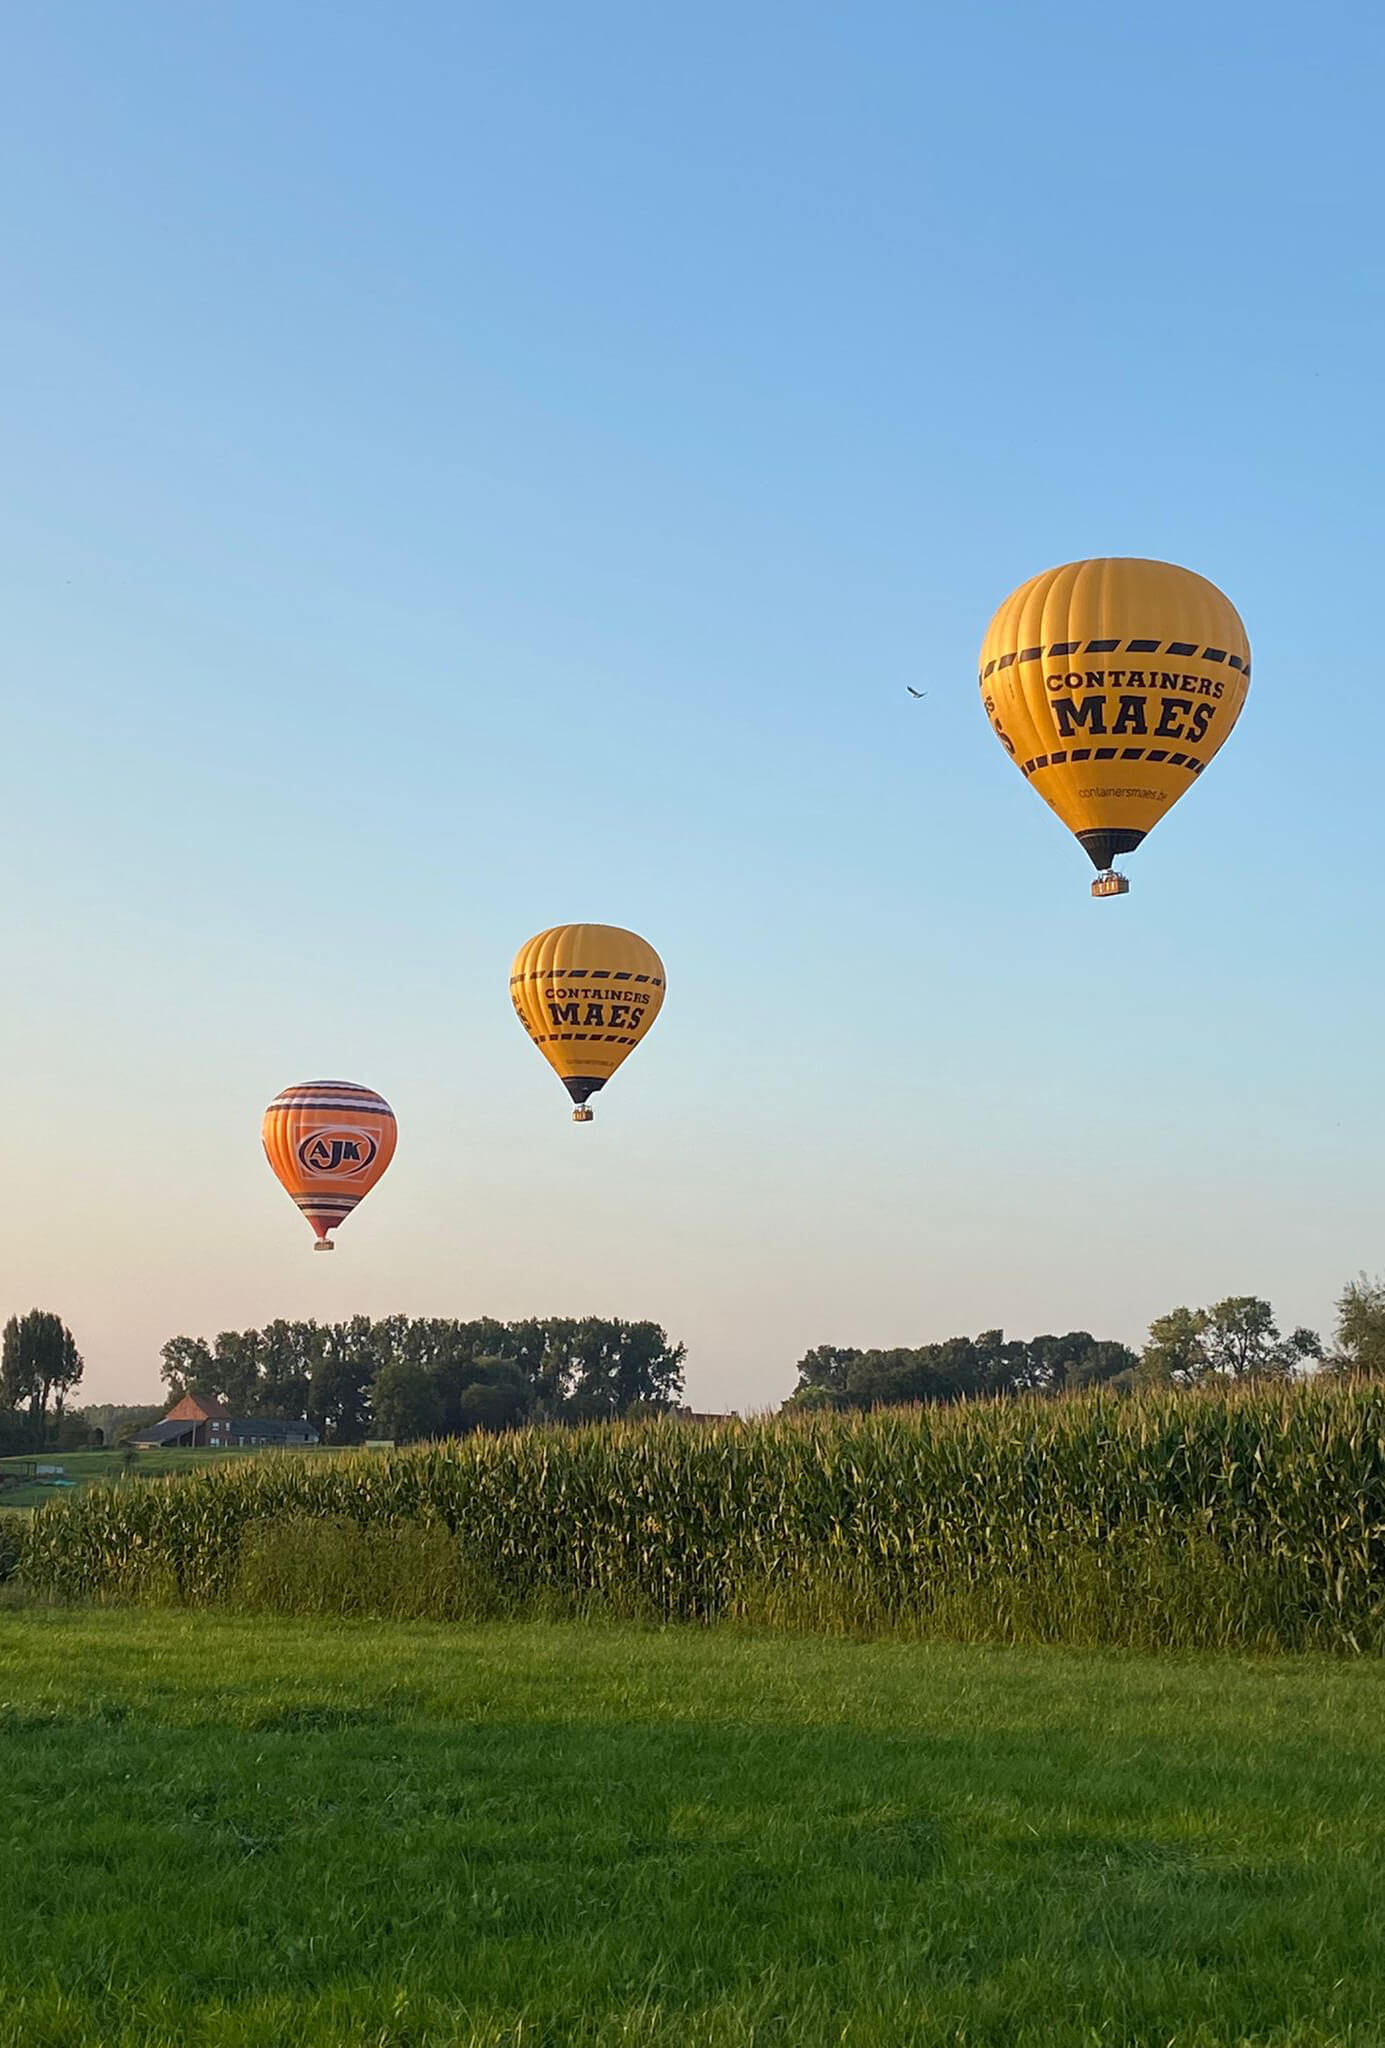 verlies Plaats meesterwerk Ballonvaart met Step in Balloons - Ballonvaren in Limburg,.…